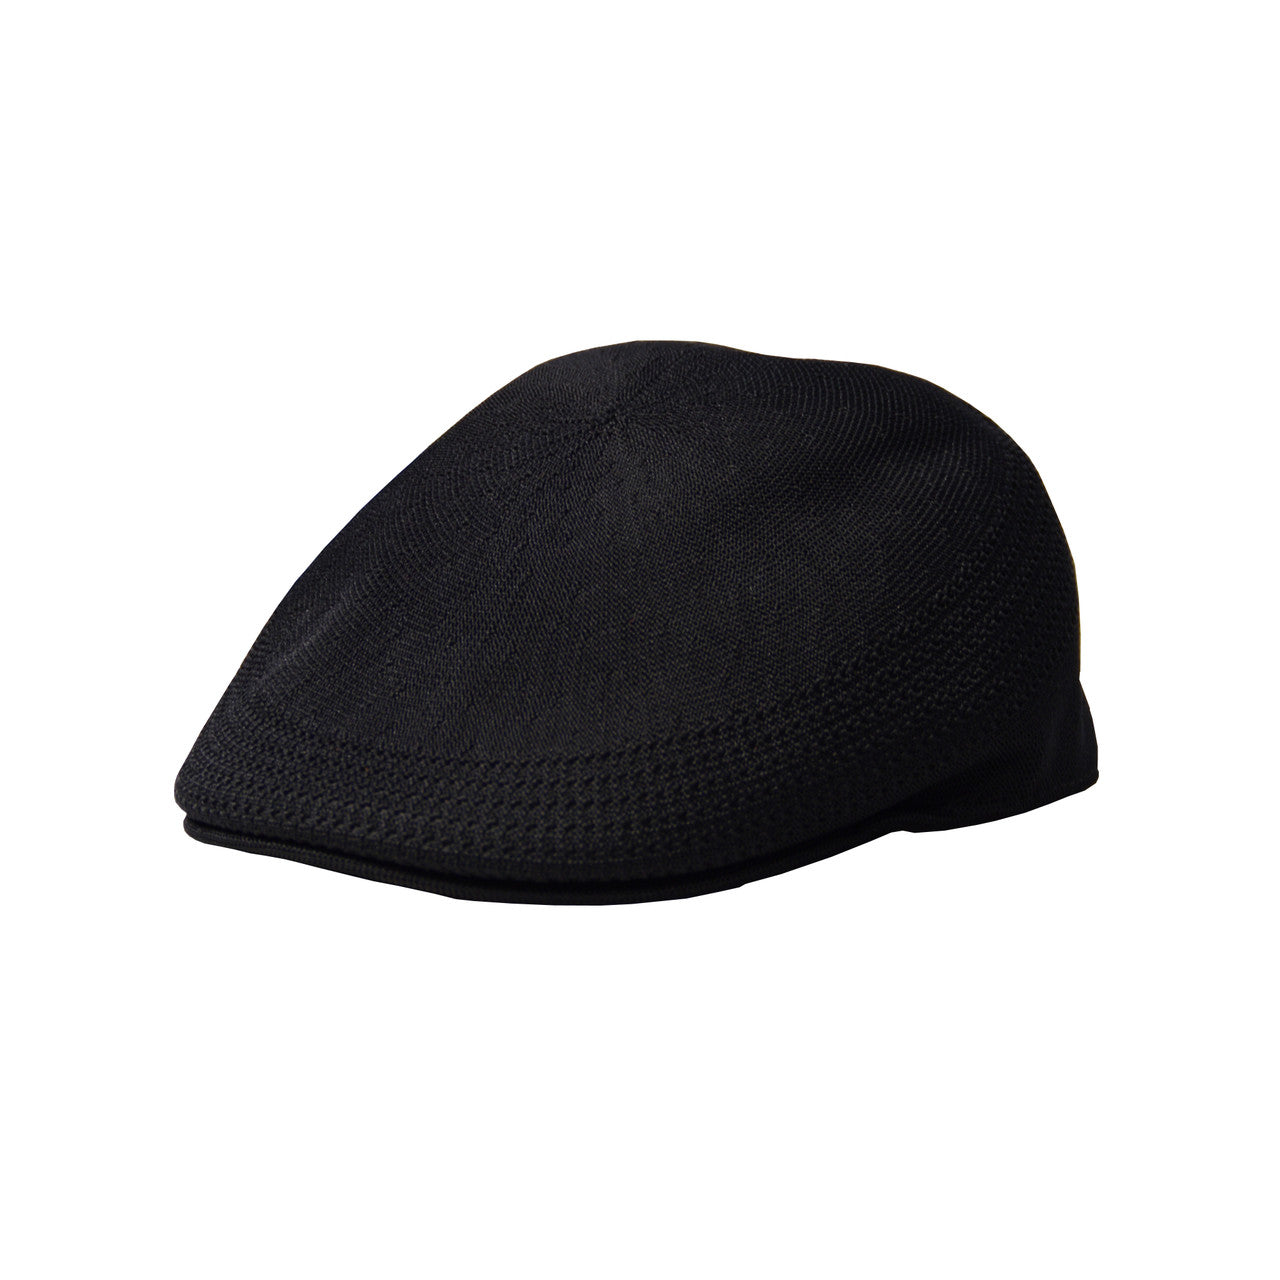 Kangol - Tropic 507 Ventair Cap Black  (Profile)